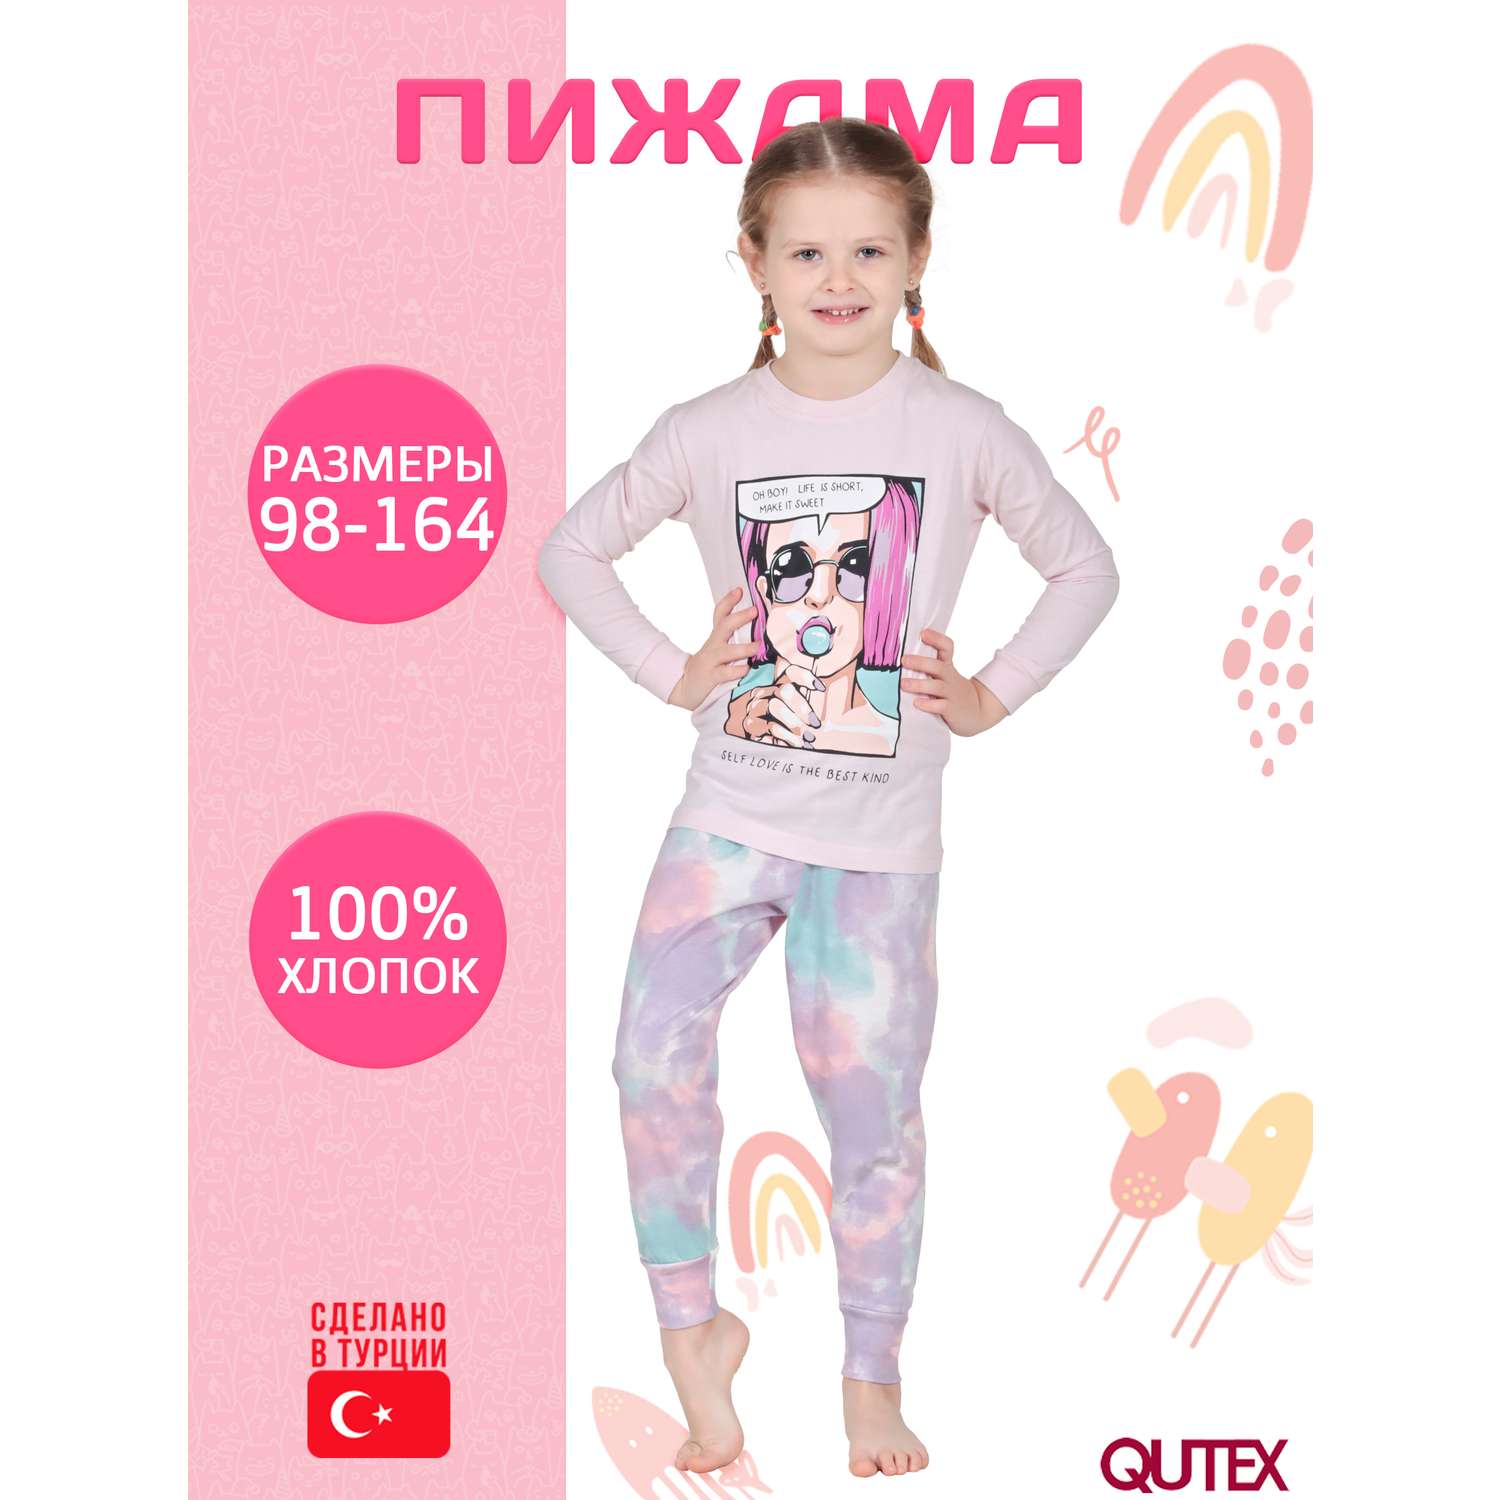 Пижама QUTEX 2301-001-1Q114 - фото 2